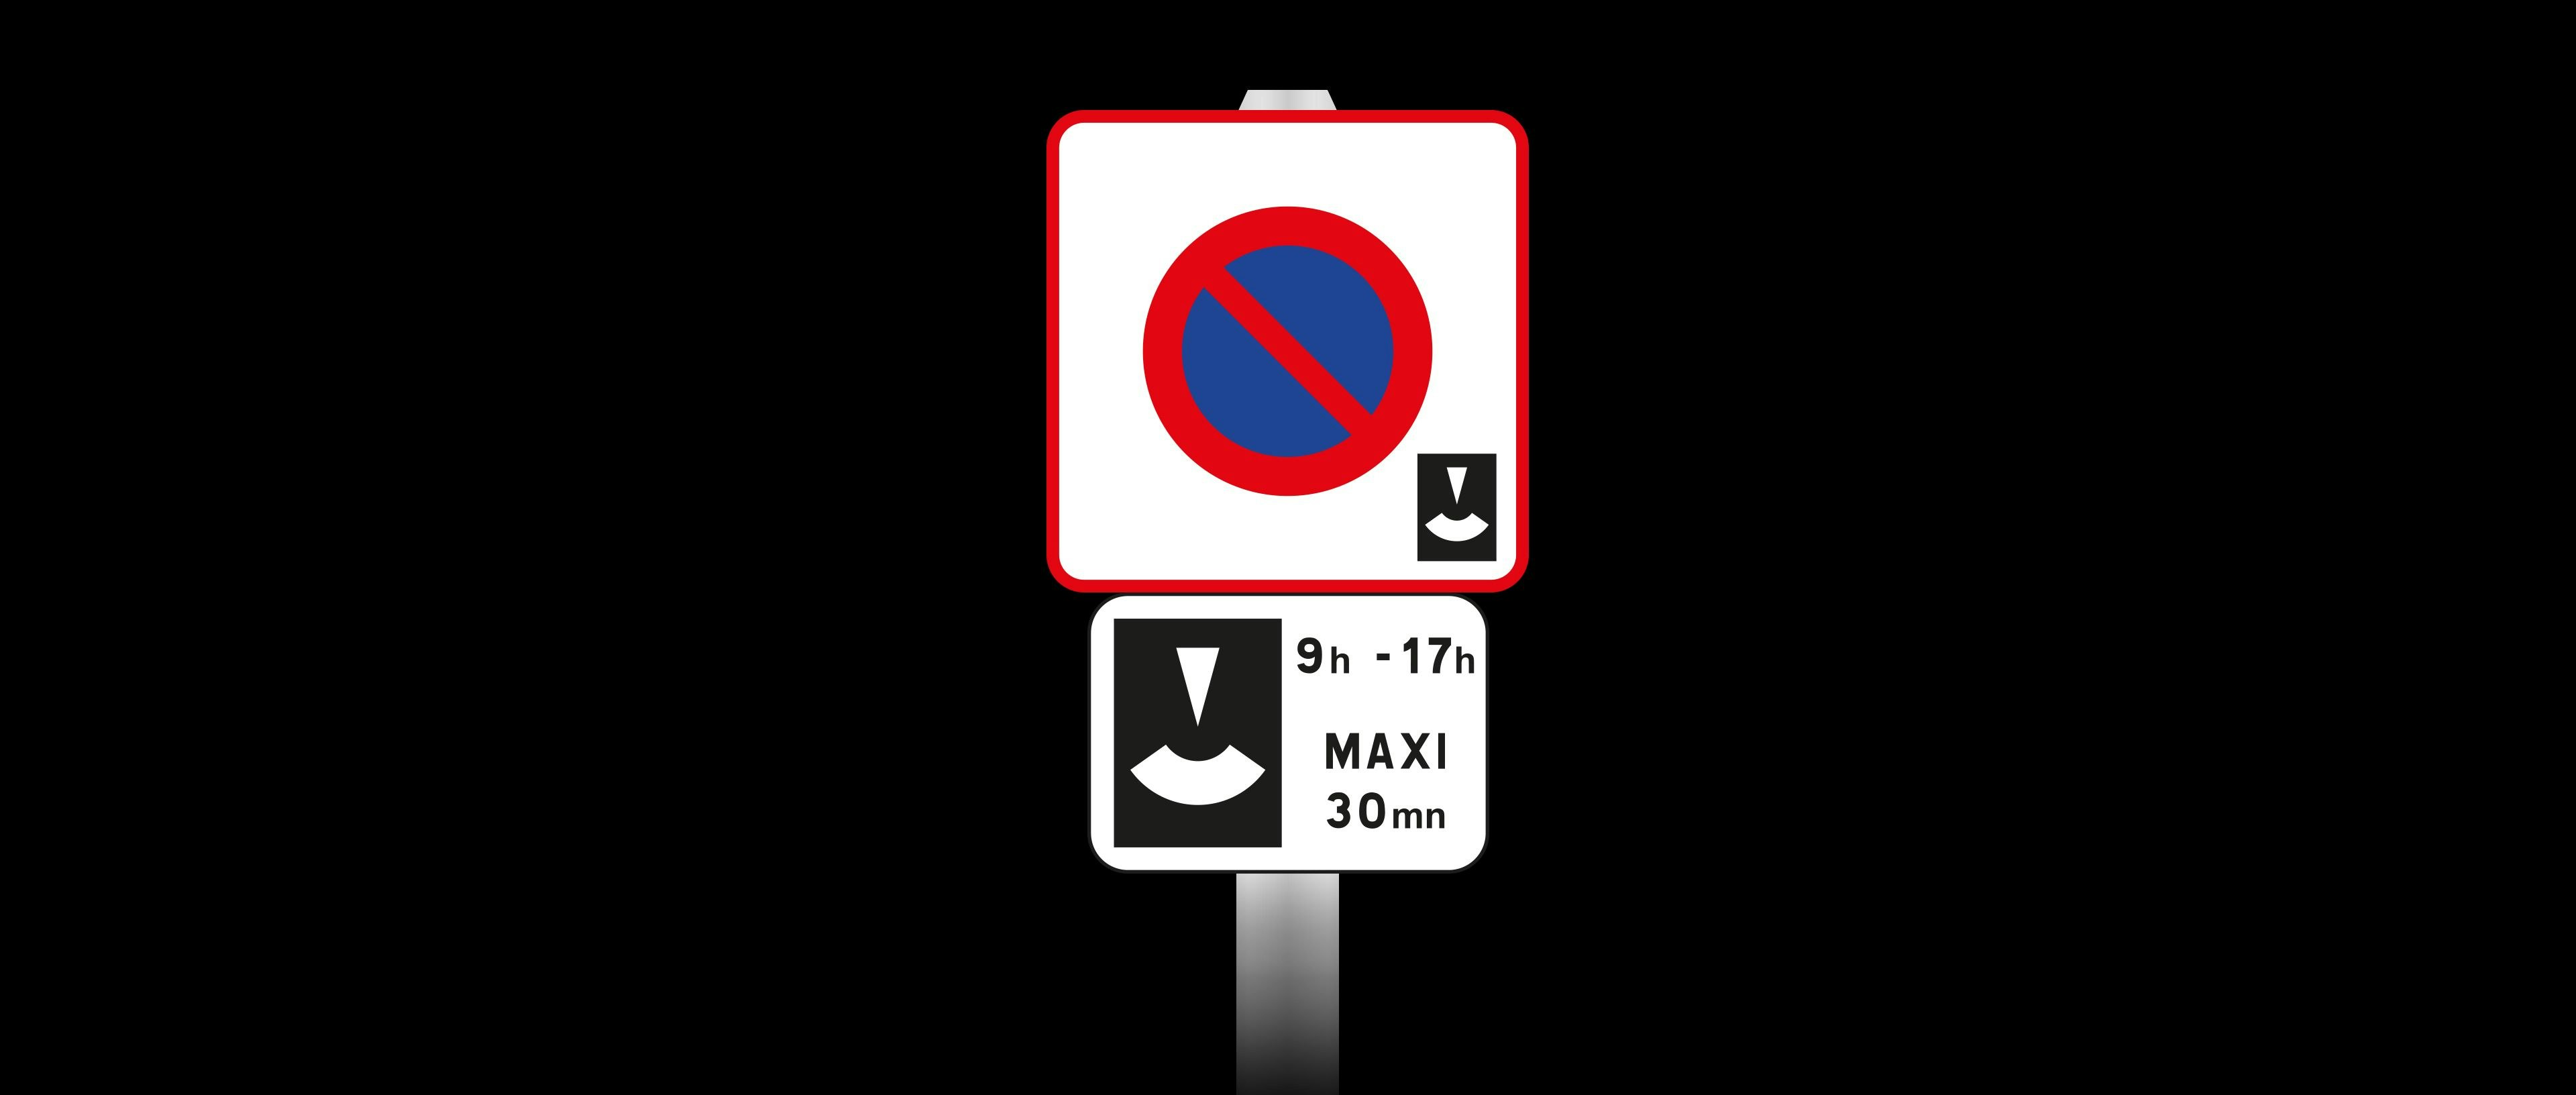 Stationnement réglementé et limité : Que dit le Code de la route ?